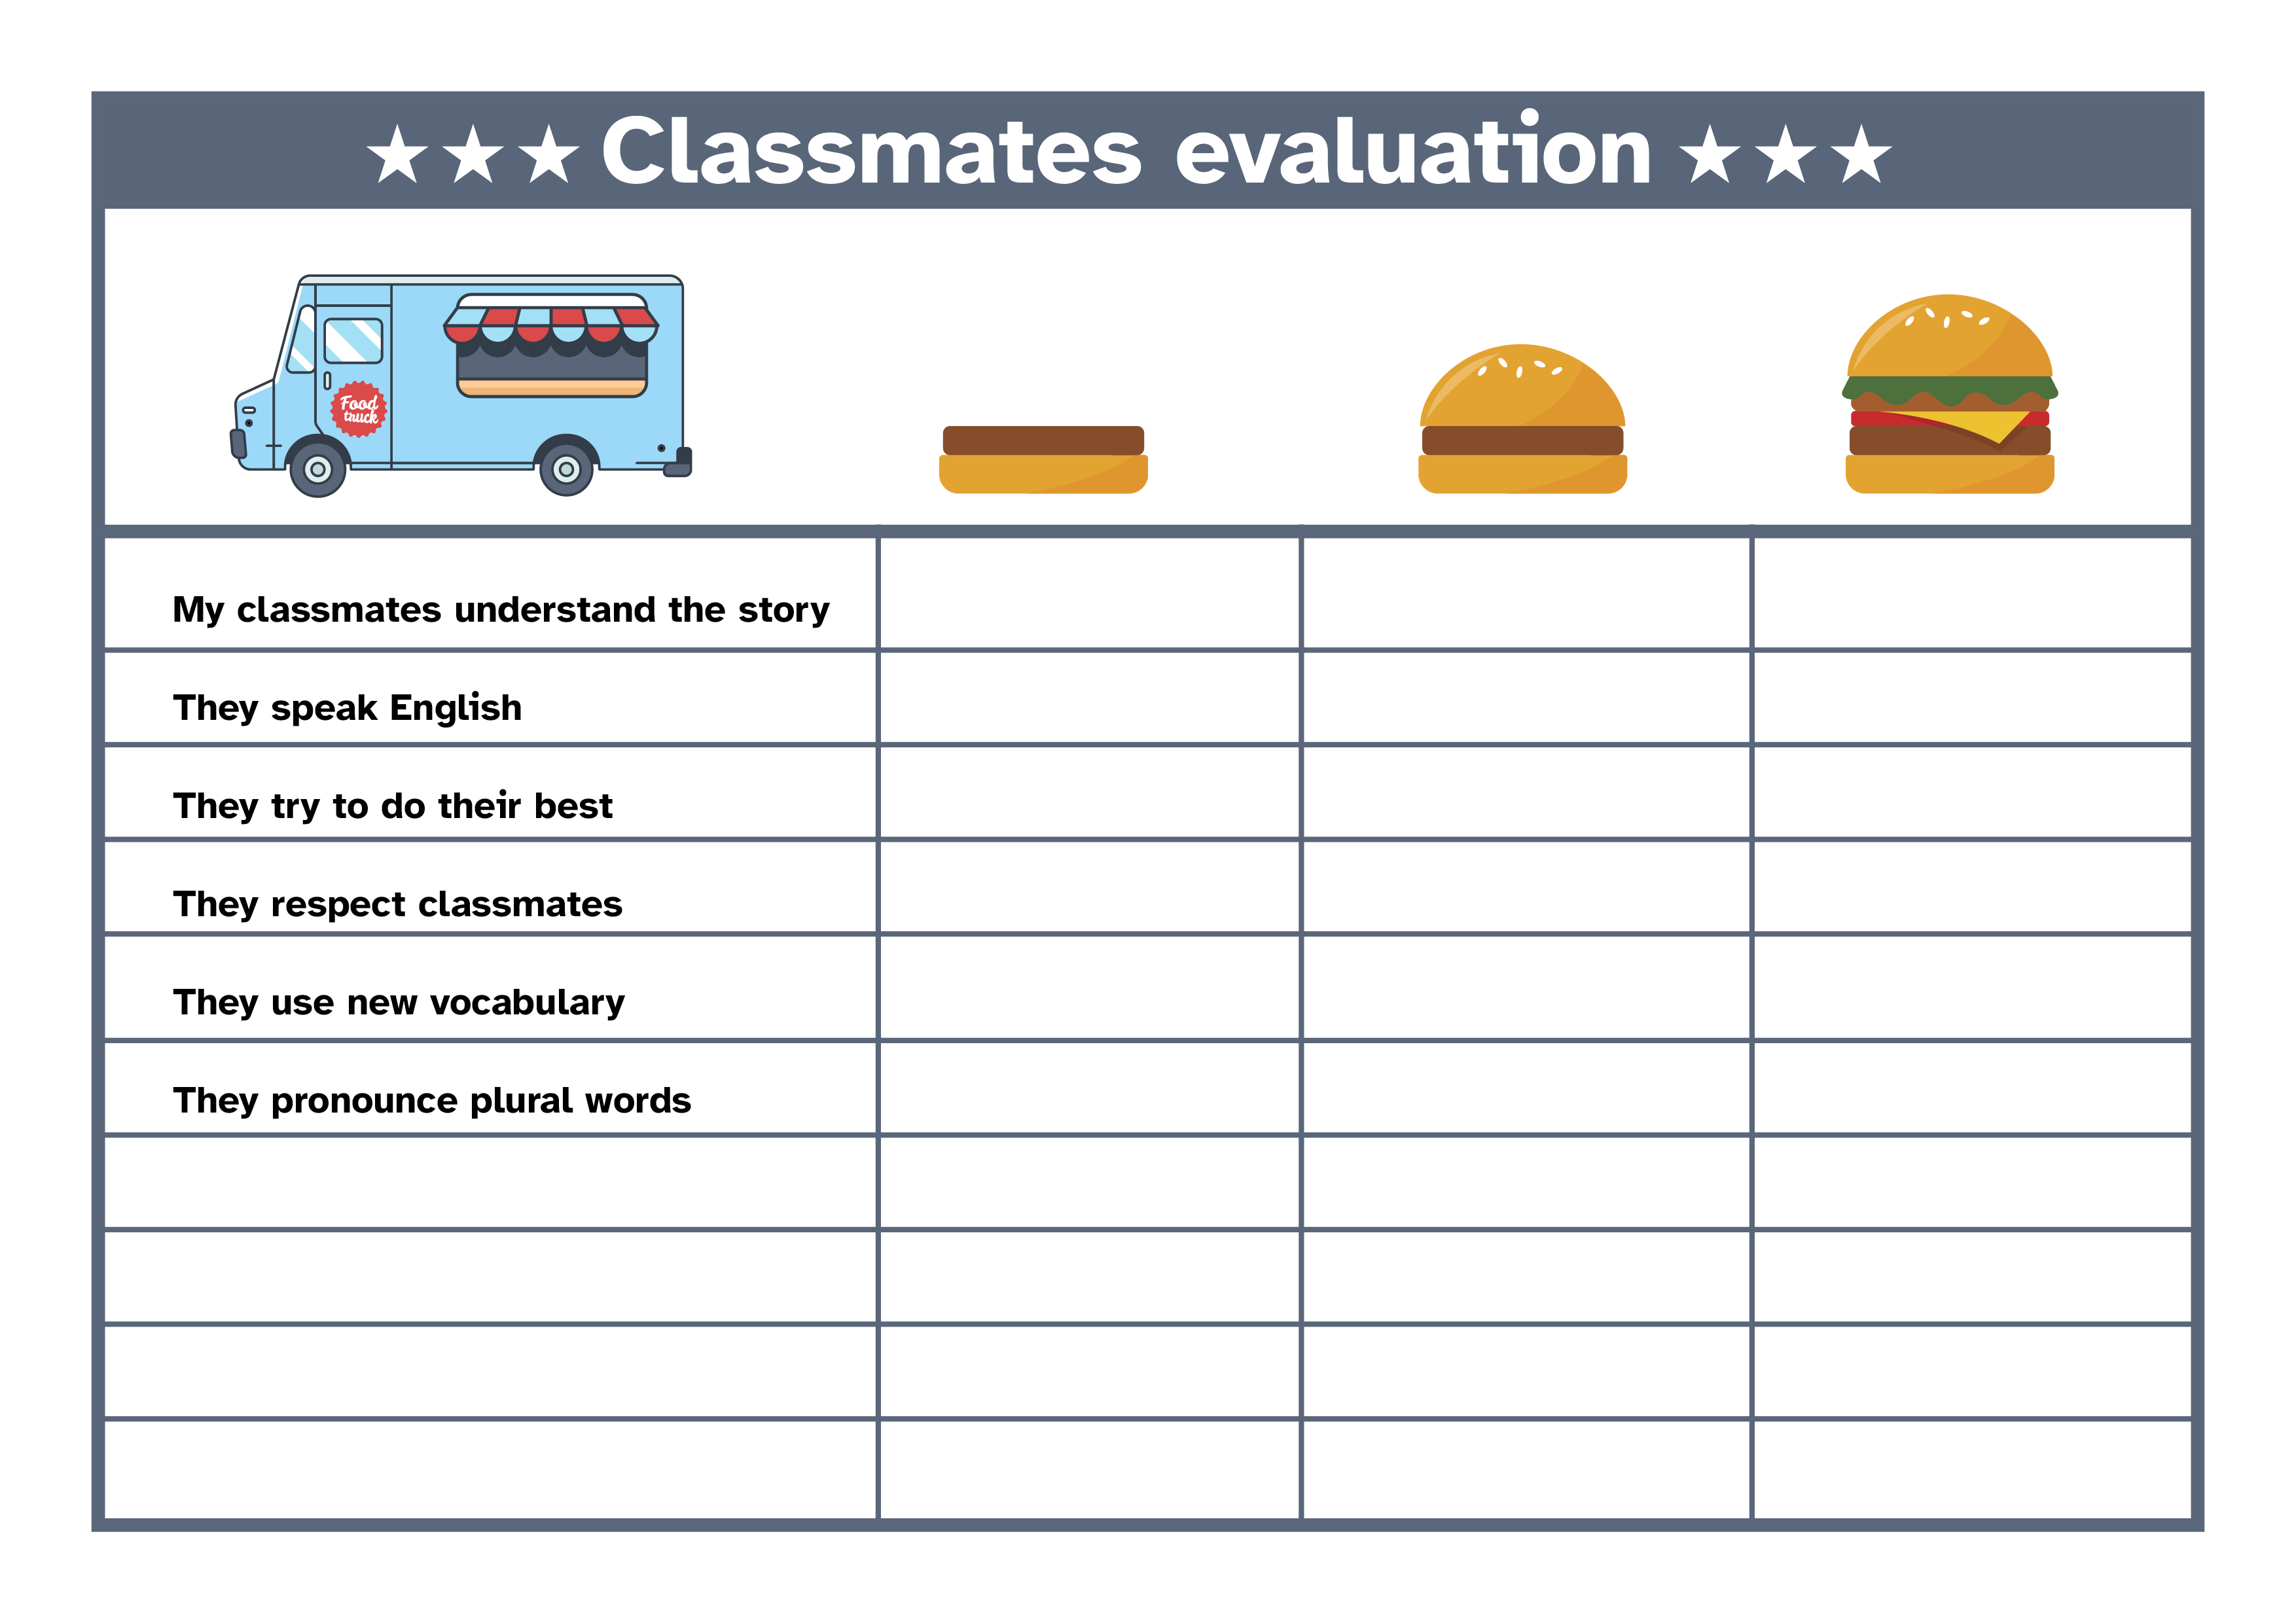 En la imagen se ve una tabla en la que se puede evaluar el nivel de excelencia de la exposición del food truck que realizan los distintos grupos